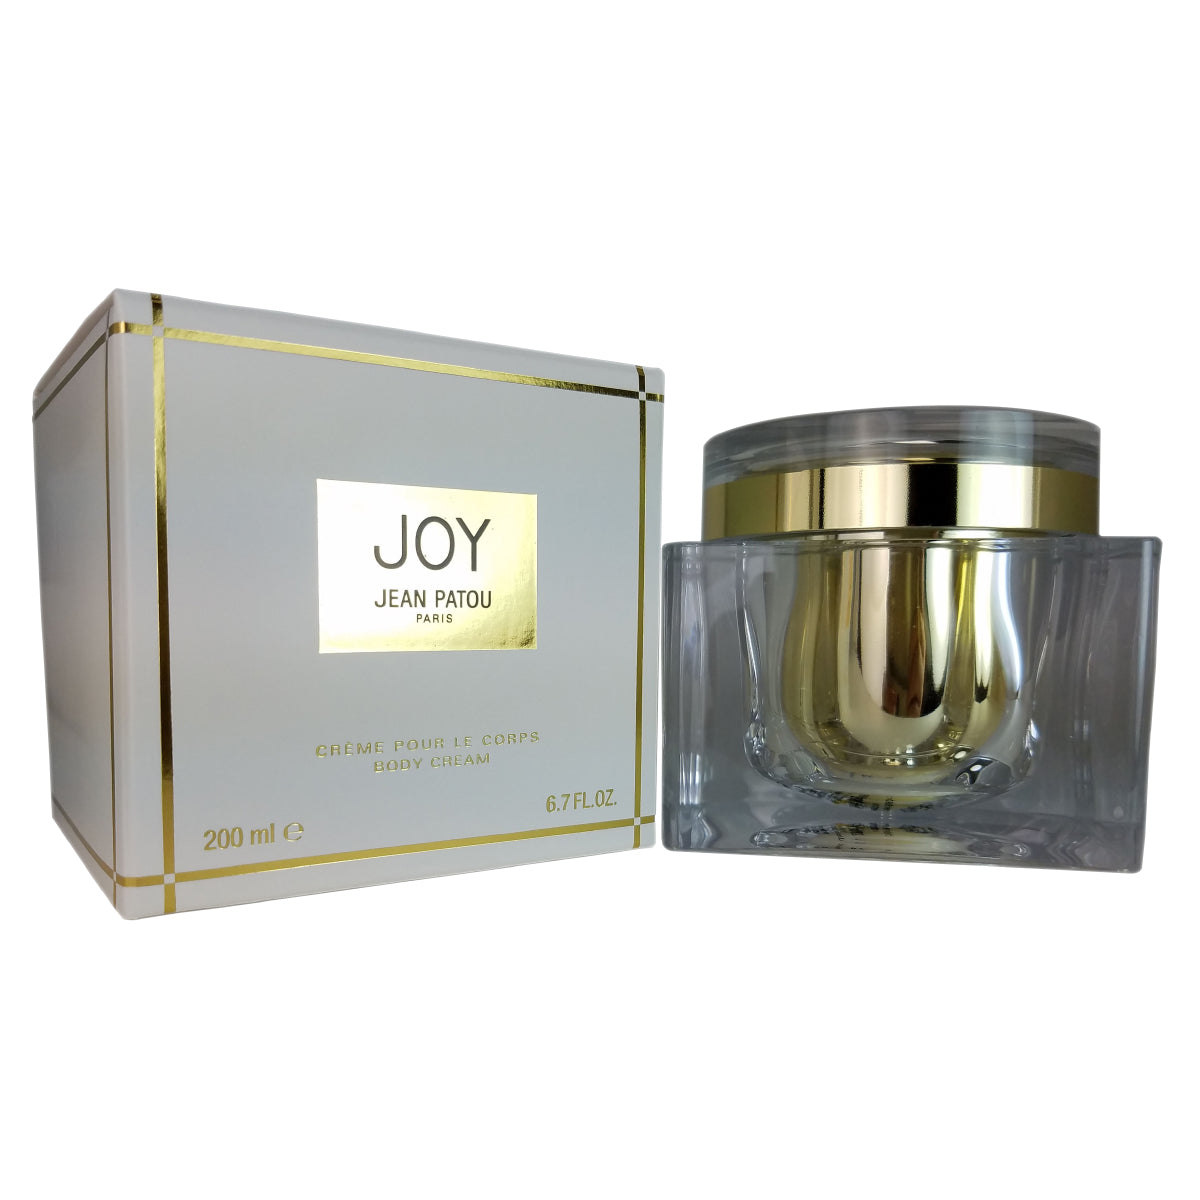 Joy for Women by Jean Patou 6.7 oz Body Cream